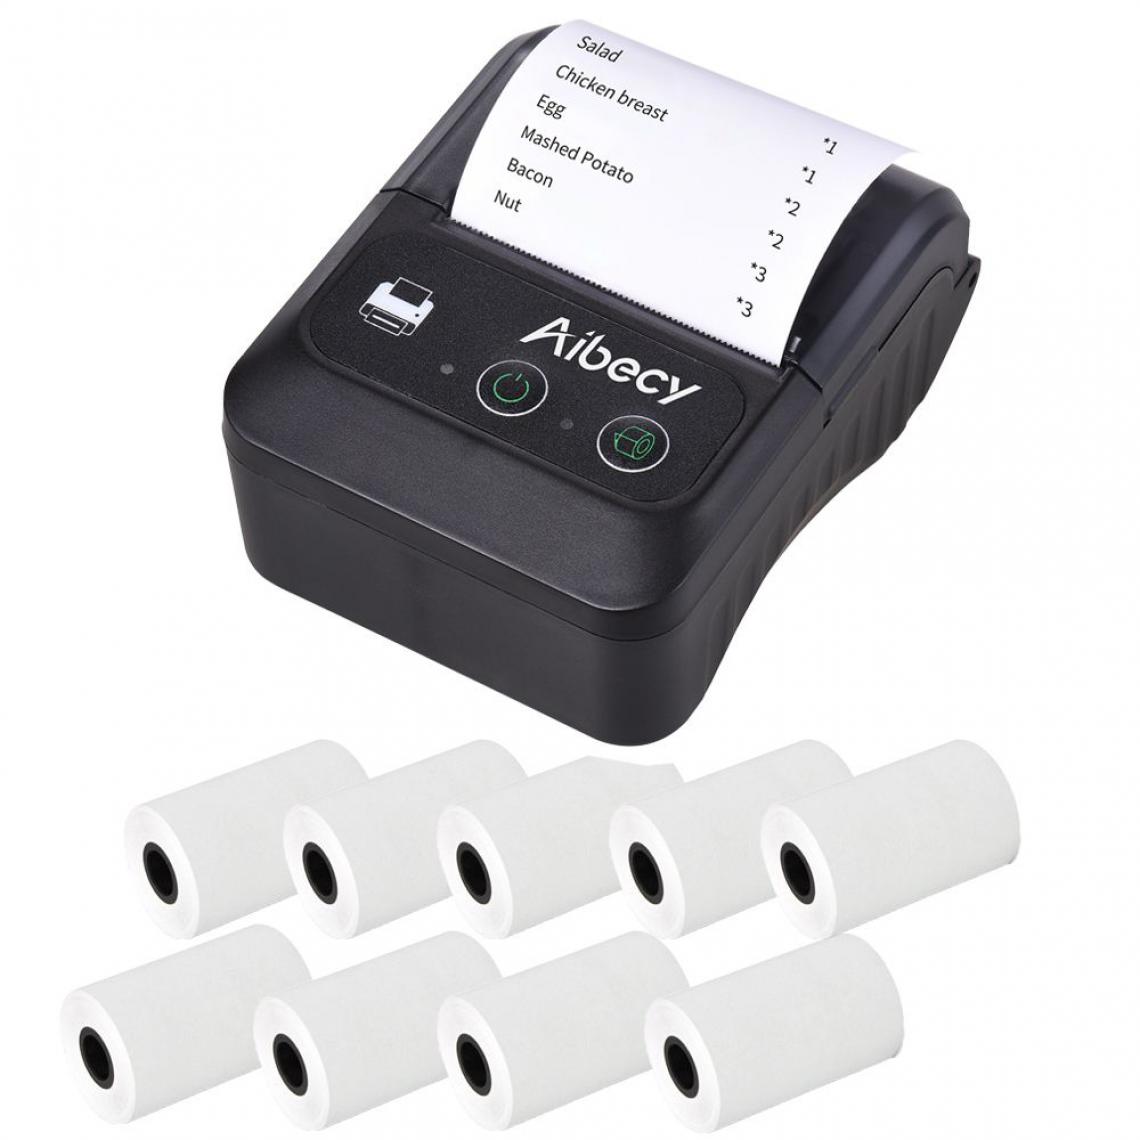 Generic - Imprimante d'Étiquettes Thermique sans Fil Bluetooth, 58mm avec 6 Rouleaux papier ,  Connexion par Bluetooth et câble USB, Compatible avec iOS, Android, système Windows  7.8 *10.5 *4.7 cm -  Noir  - Imprimantes d'étiquettes